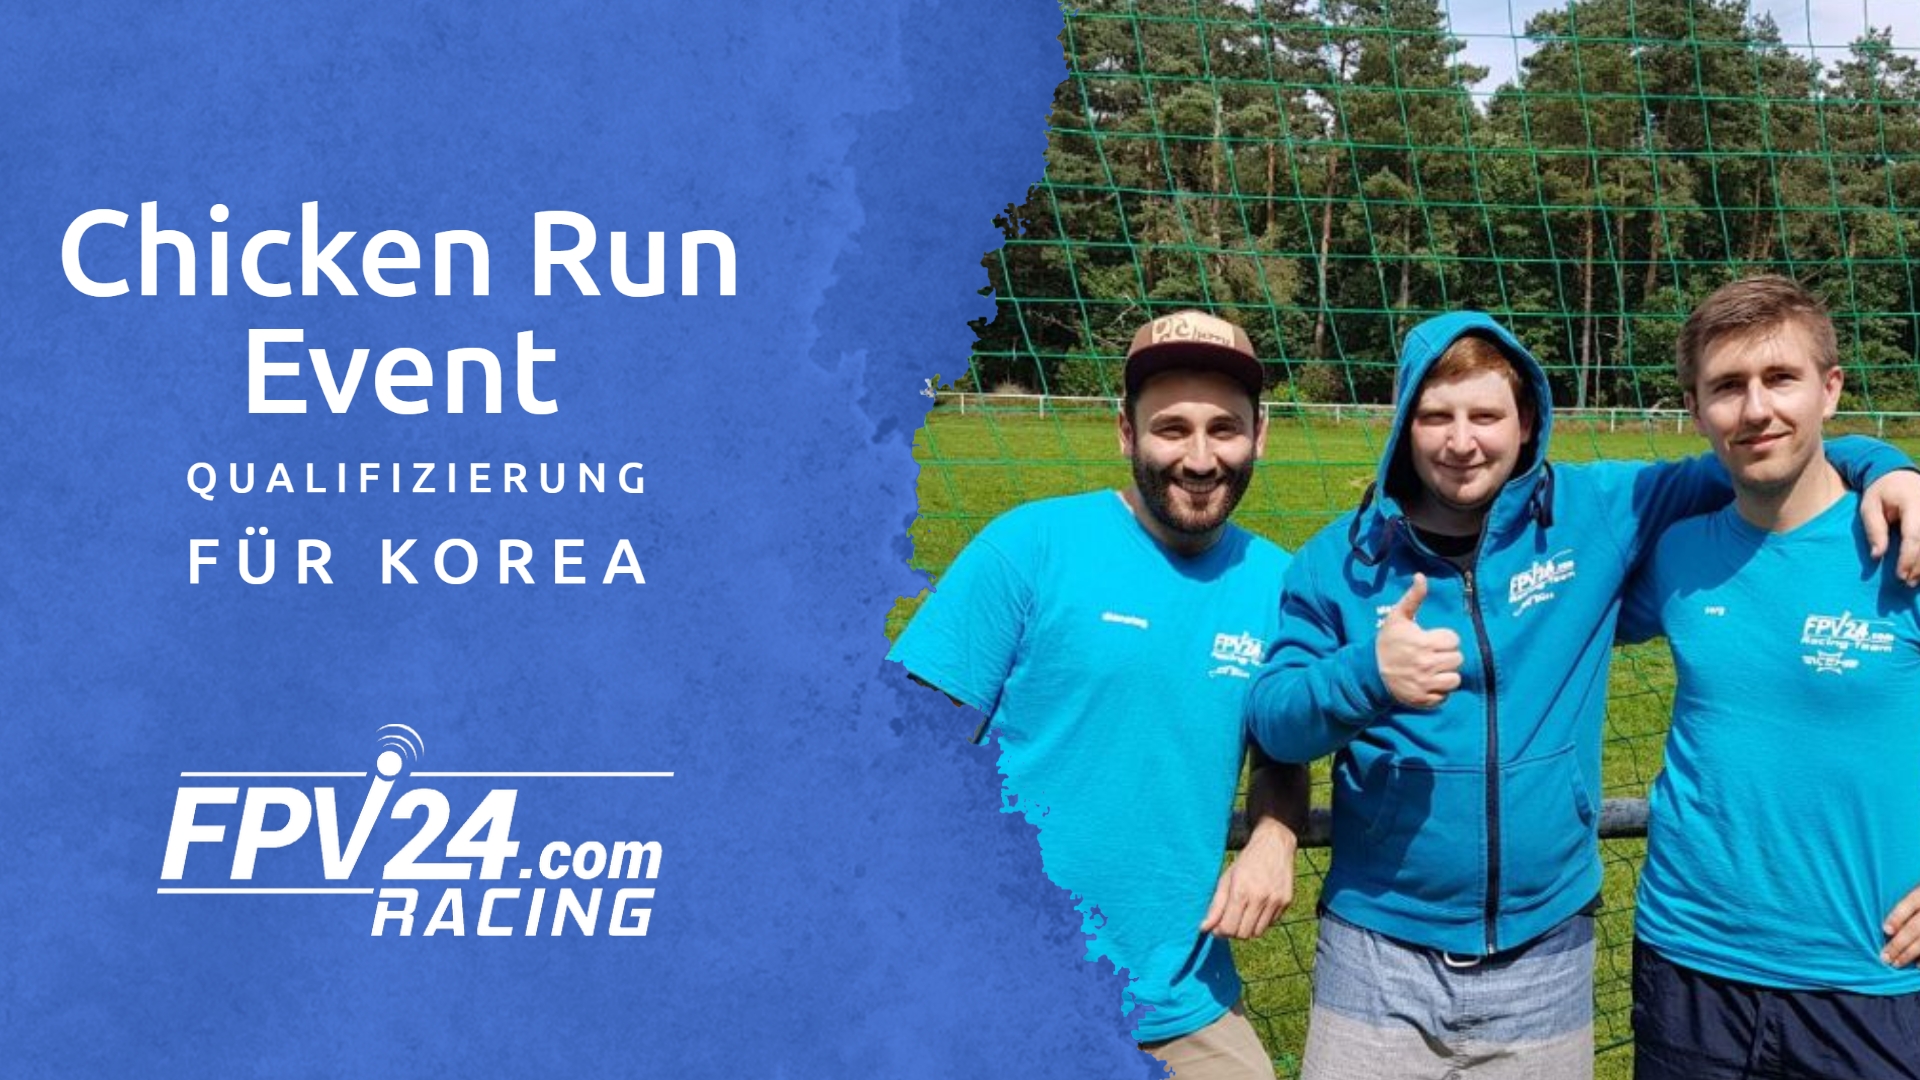 Chicken Run Event - Qualifizierung für Korea